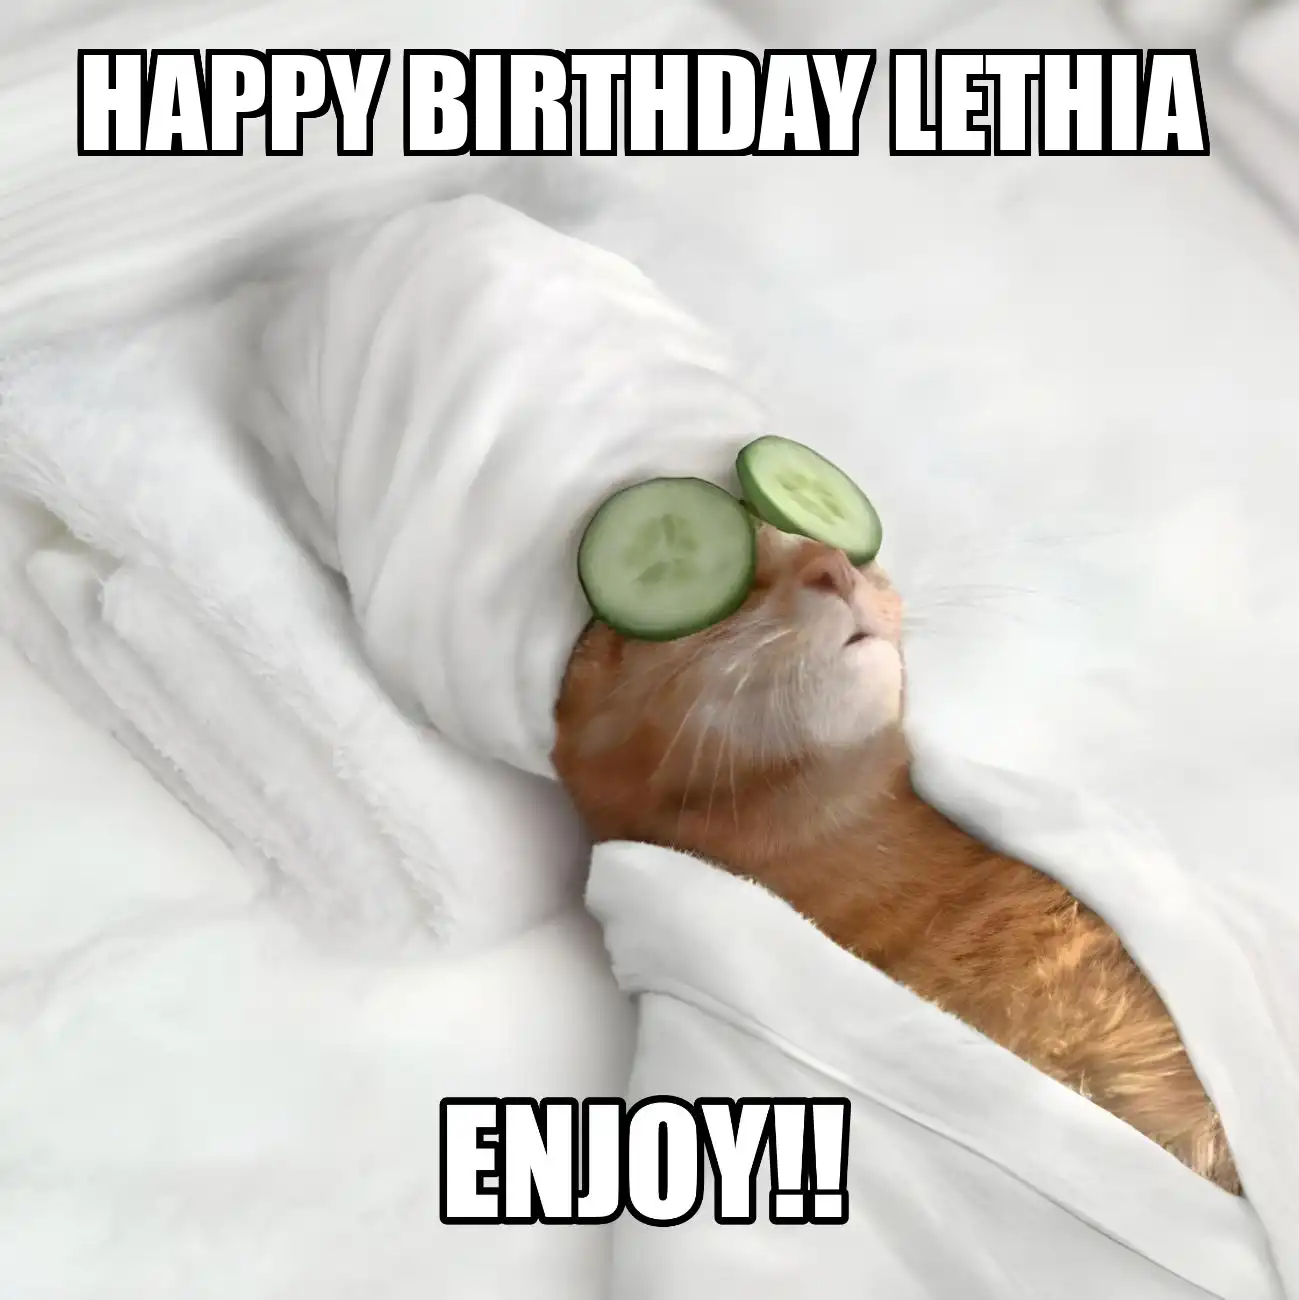 Happy Birthday Lethia Enjoy Cat Meme